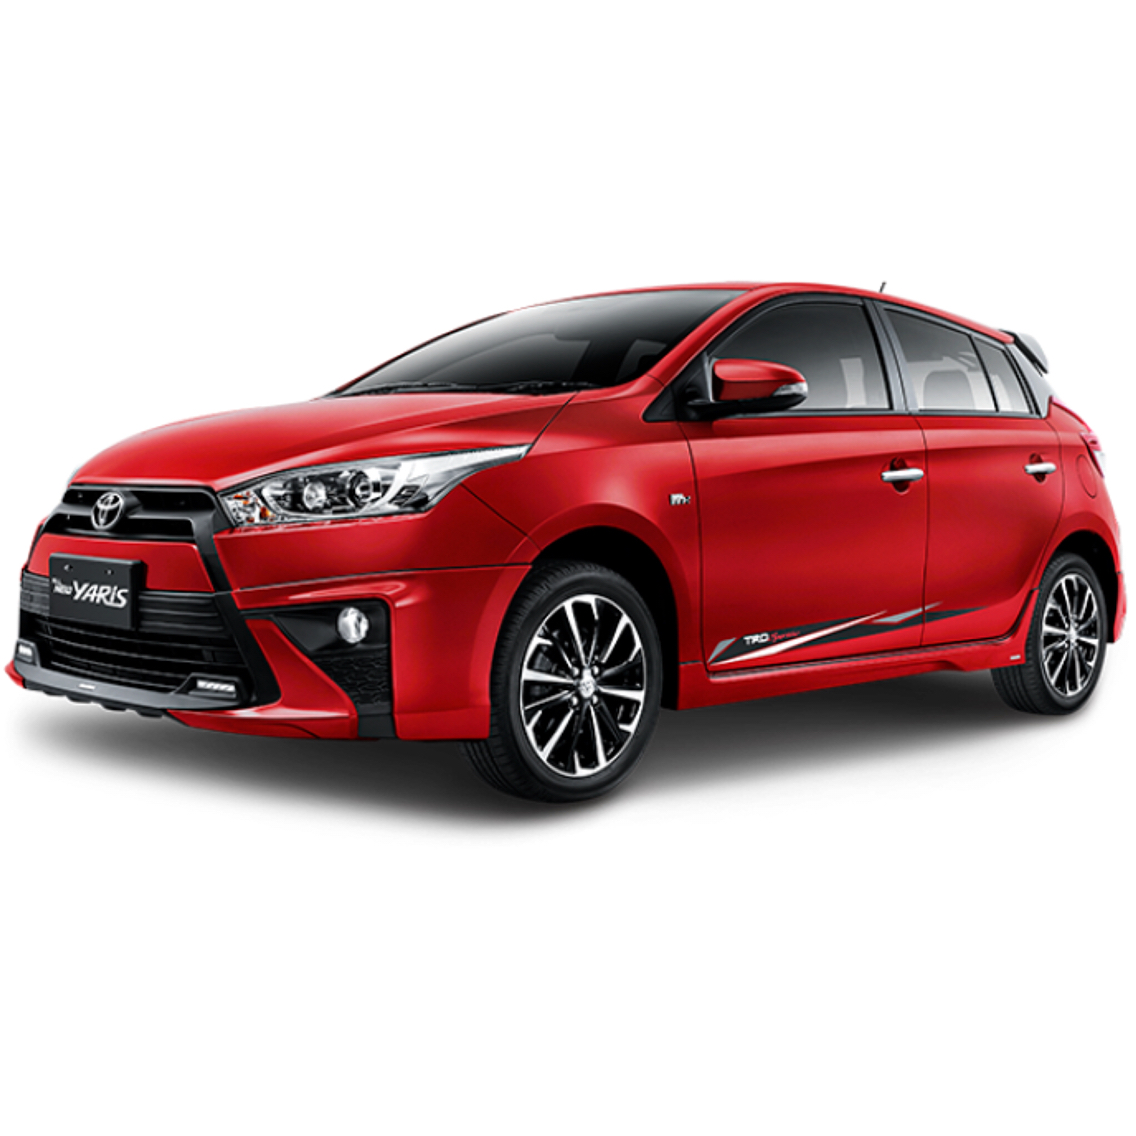  Harga  Mobil  Toyota Yaris  Semarang Sales Promo Kredit 